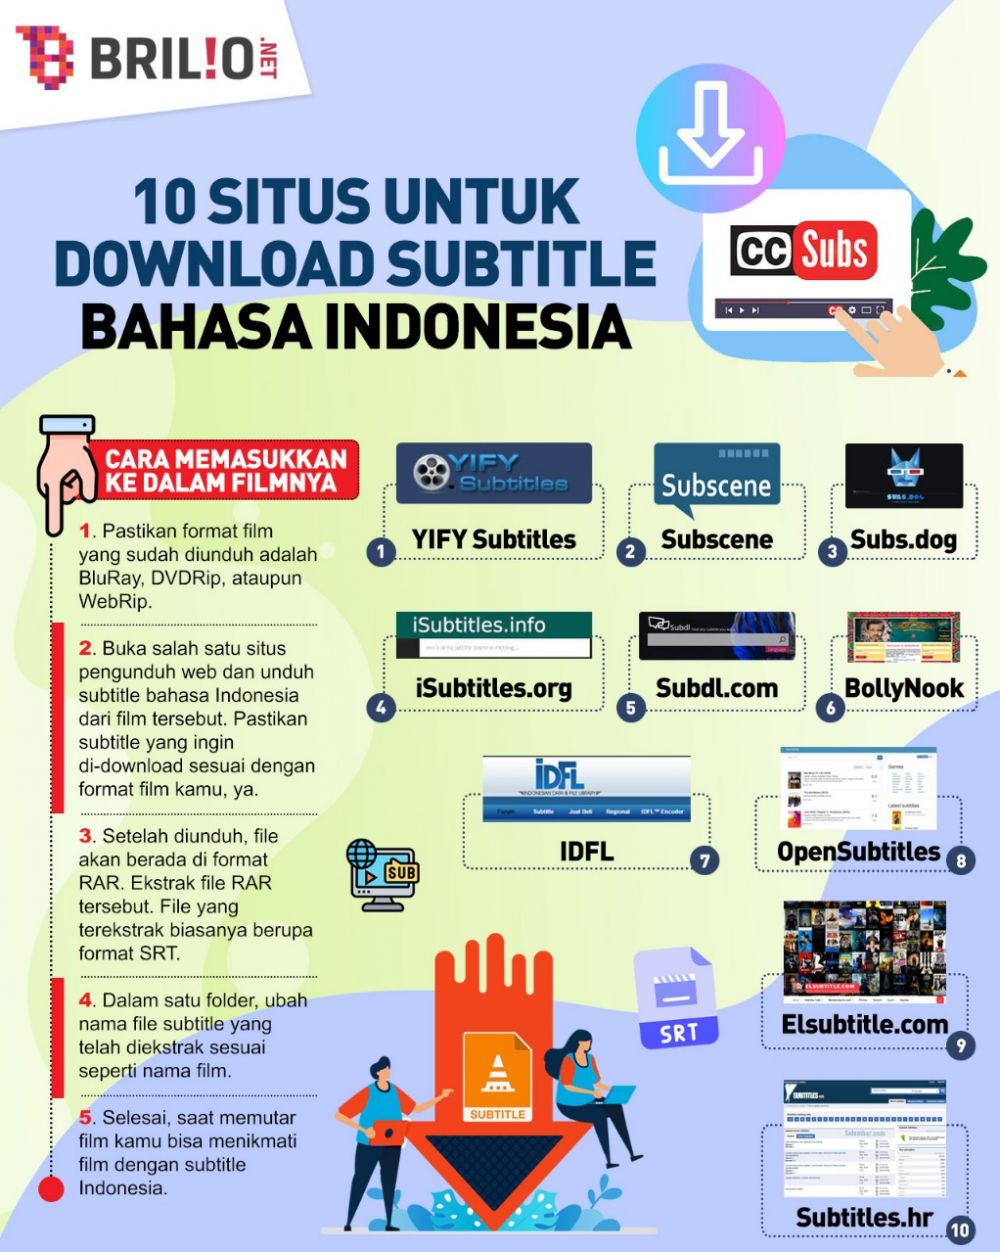 15 Situs untuk download subtitle Bahasa Indonesia, beserta caranya